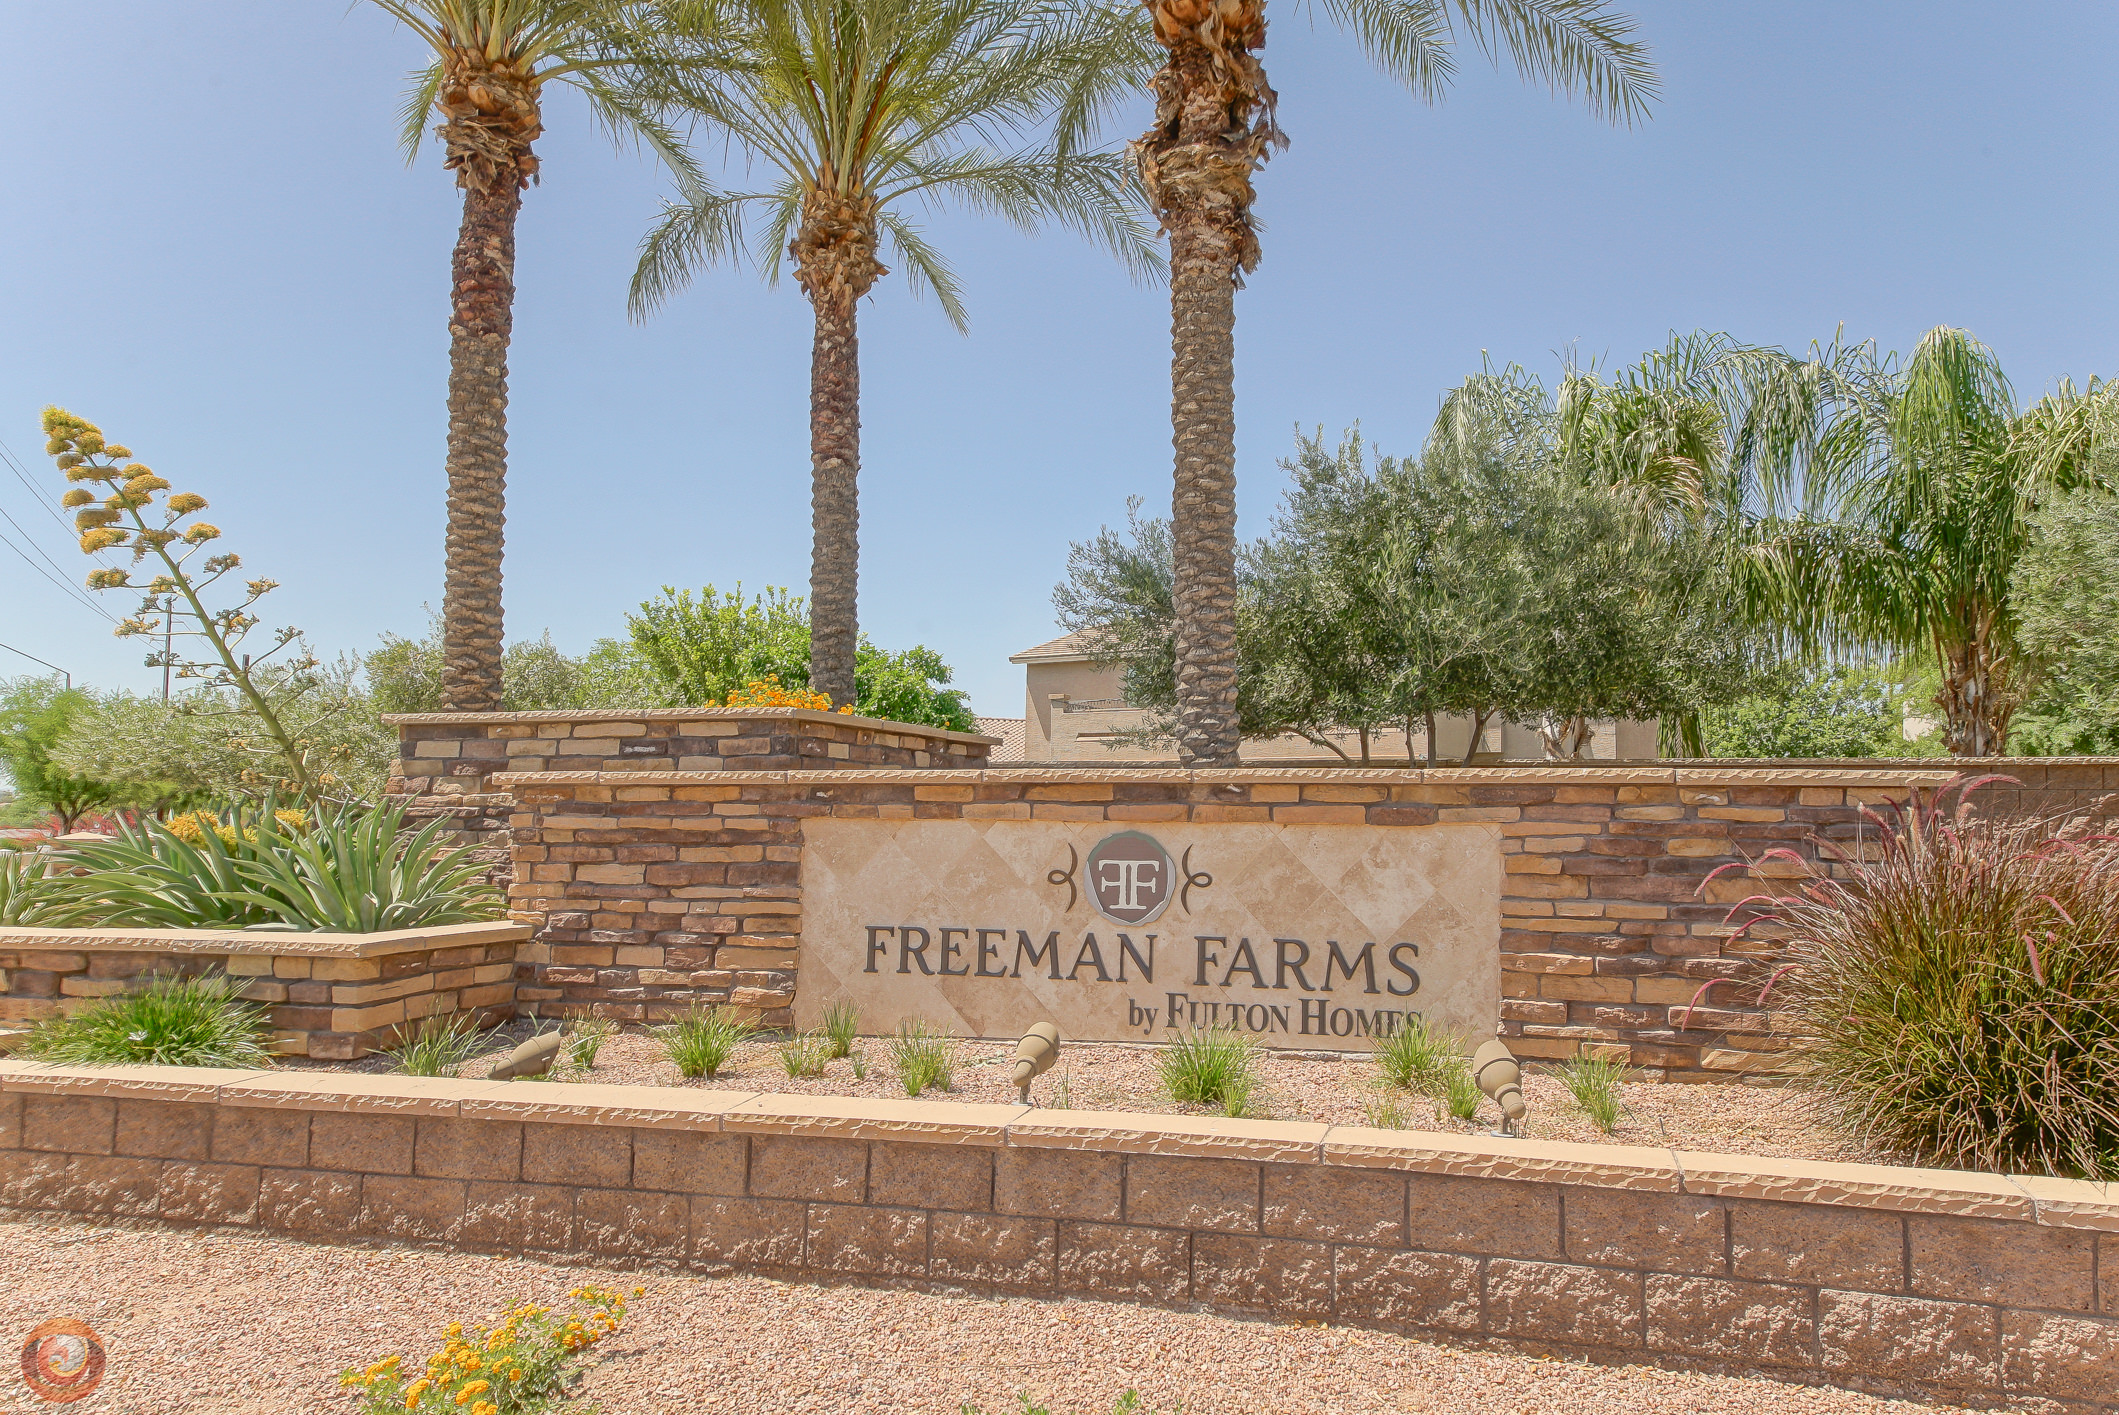 Freeman Farms